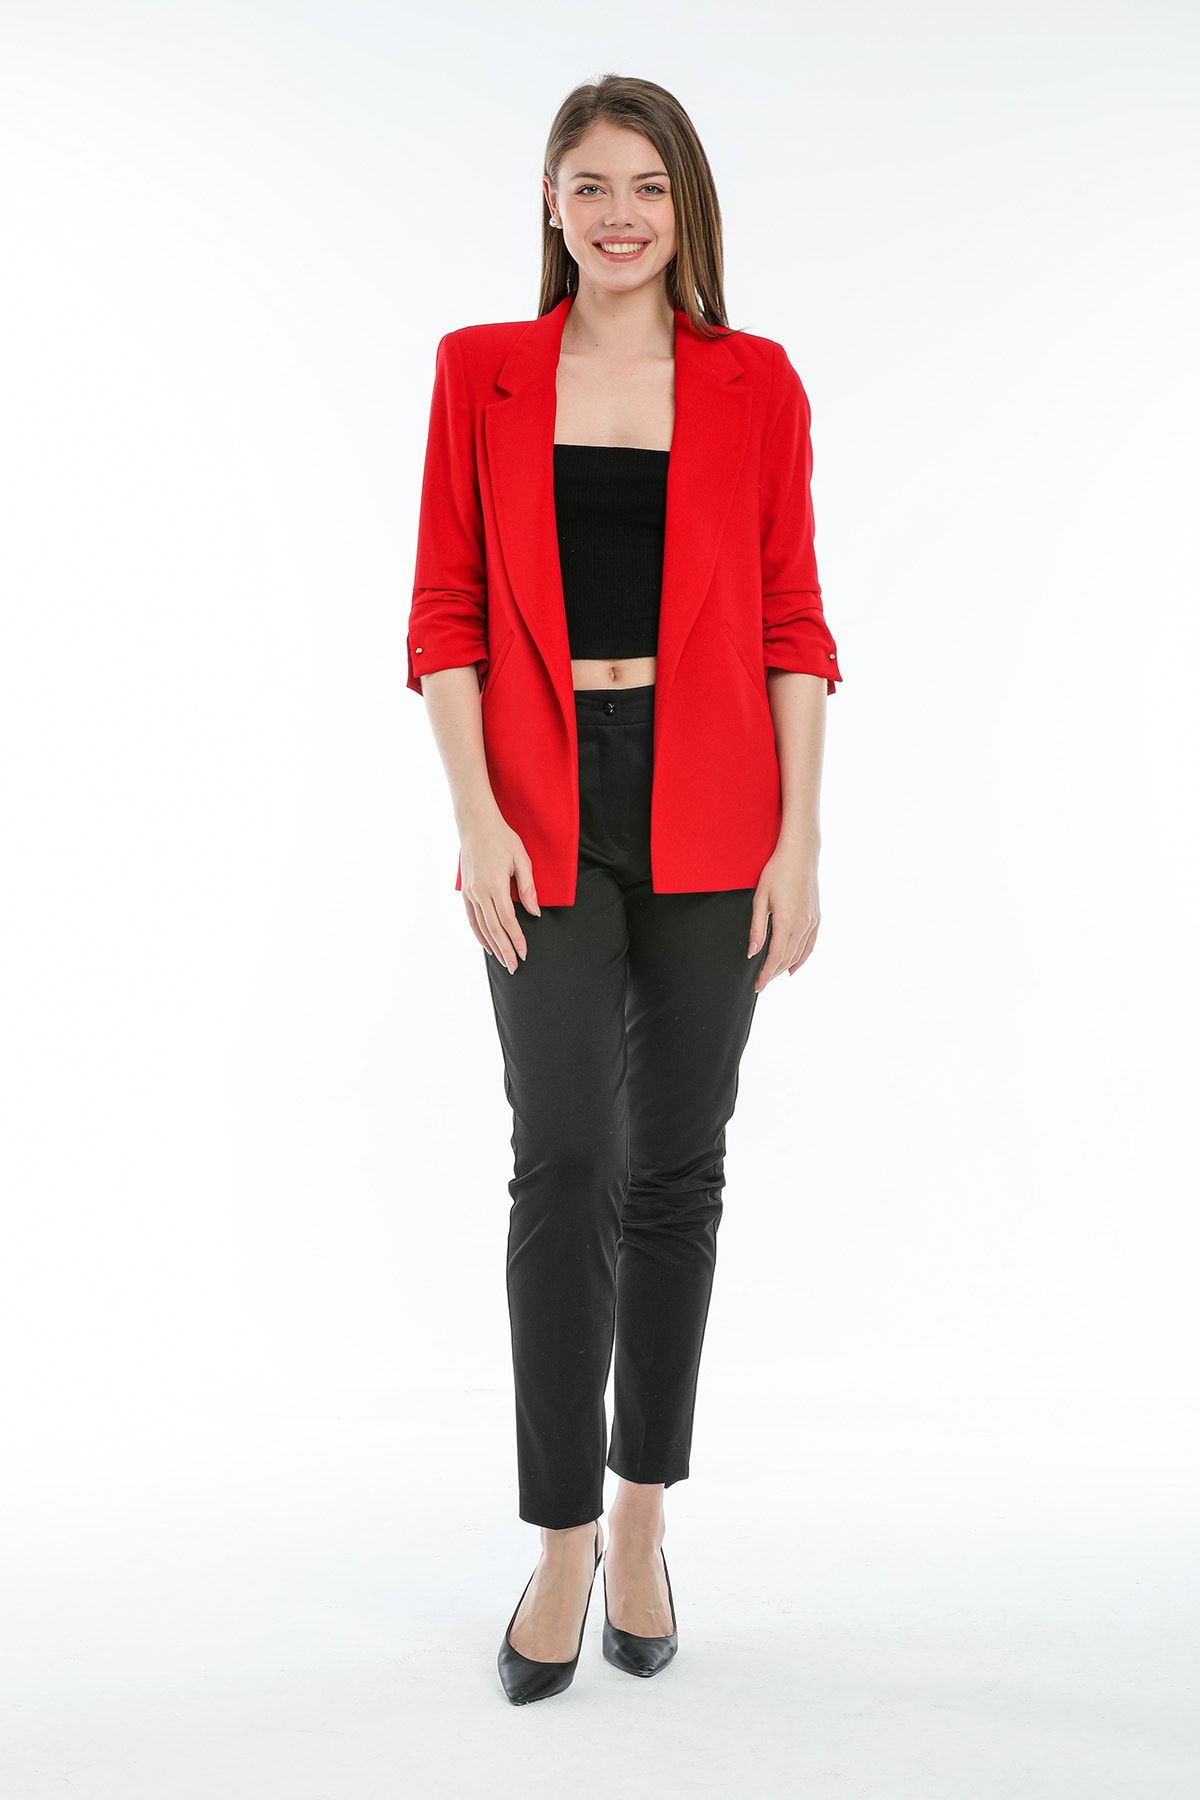 SİSLİNE Kadın Kırmızı Truvakar Kol Blazer Ceket